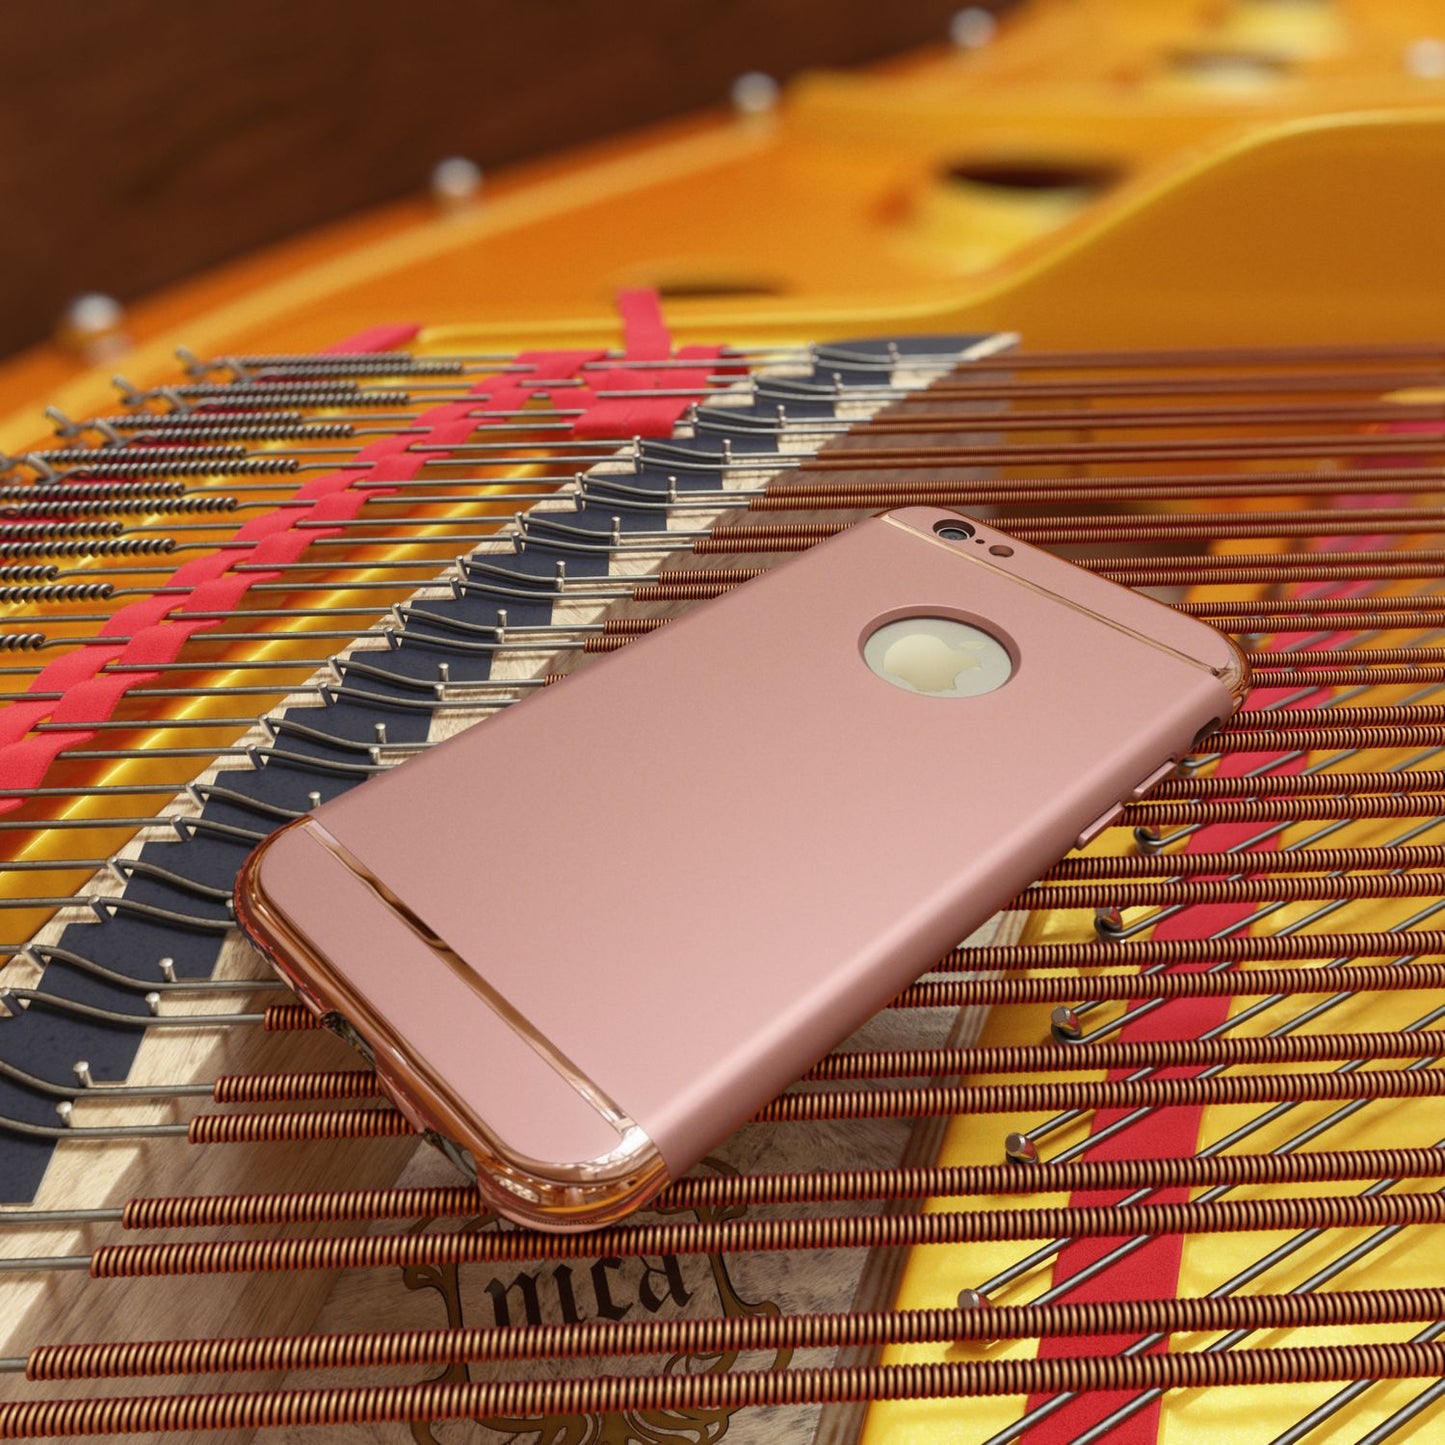 NALIA Handy Hülle für Apple iPhone 6 6S, Schutz Case Cover Tasche Bumper Etui